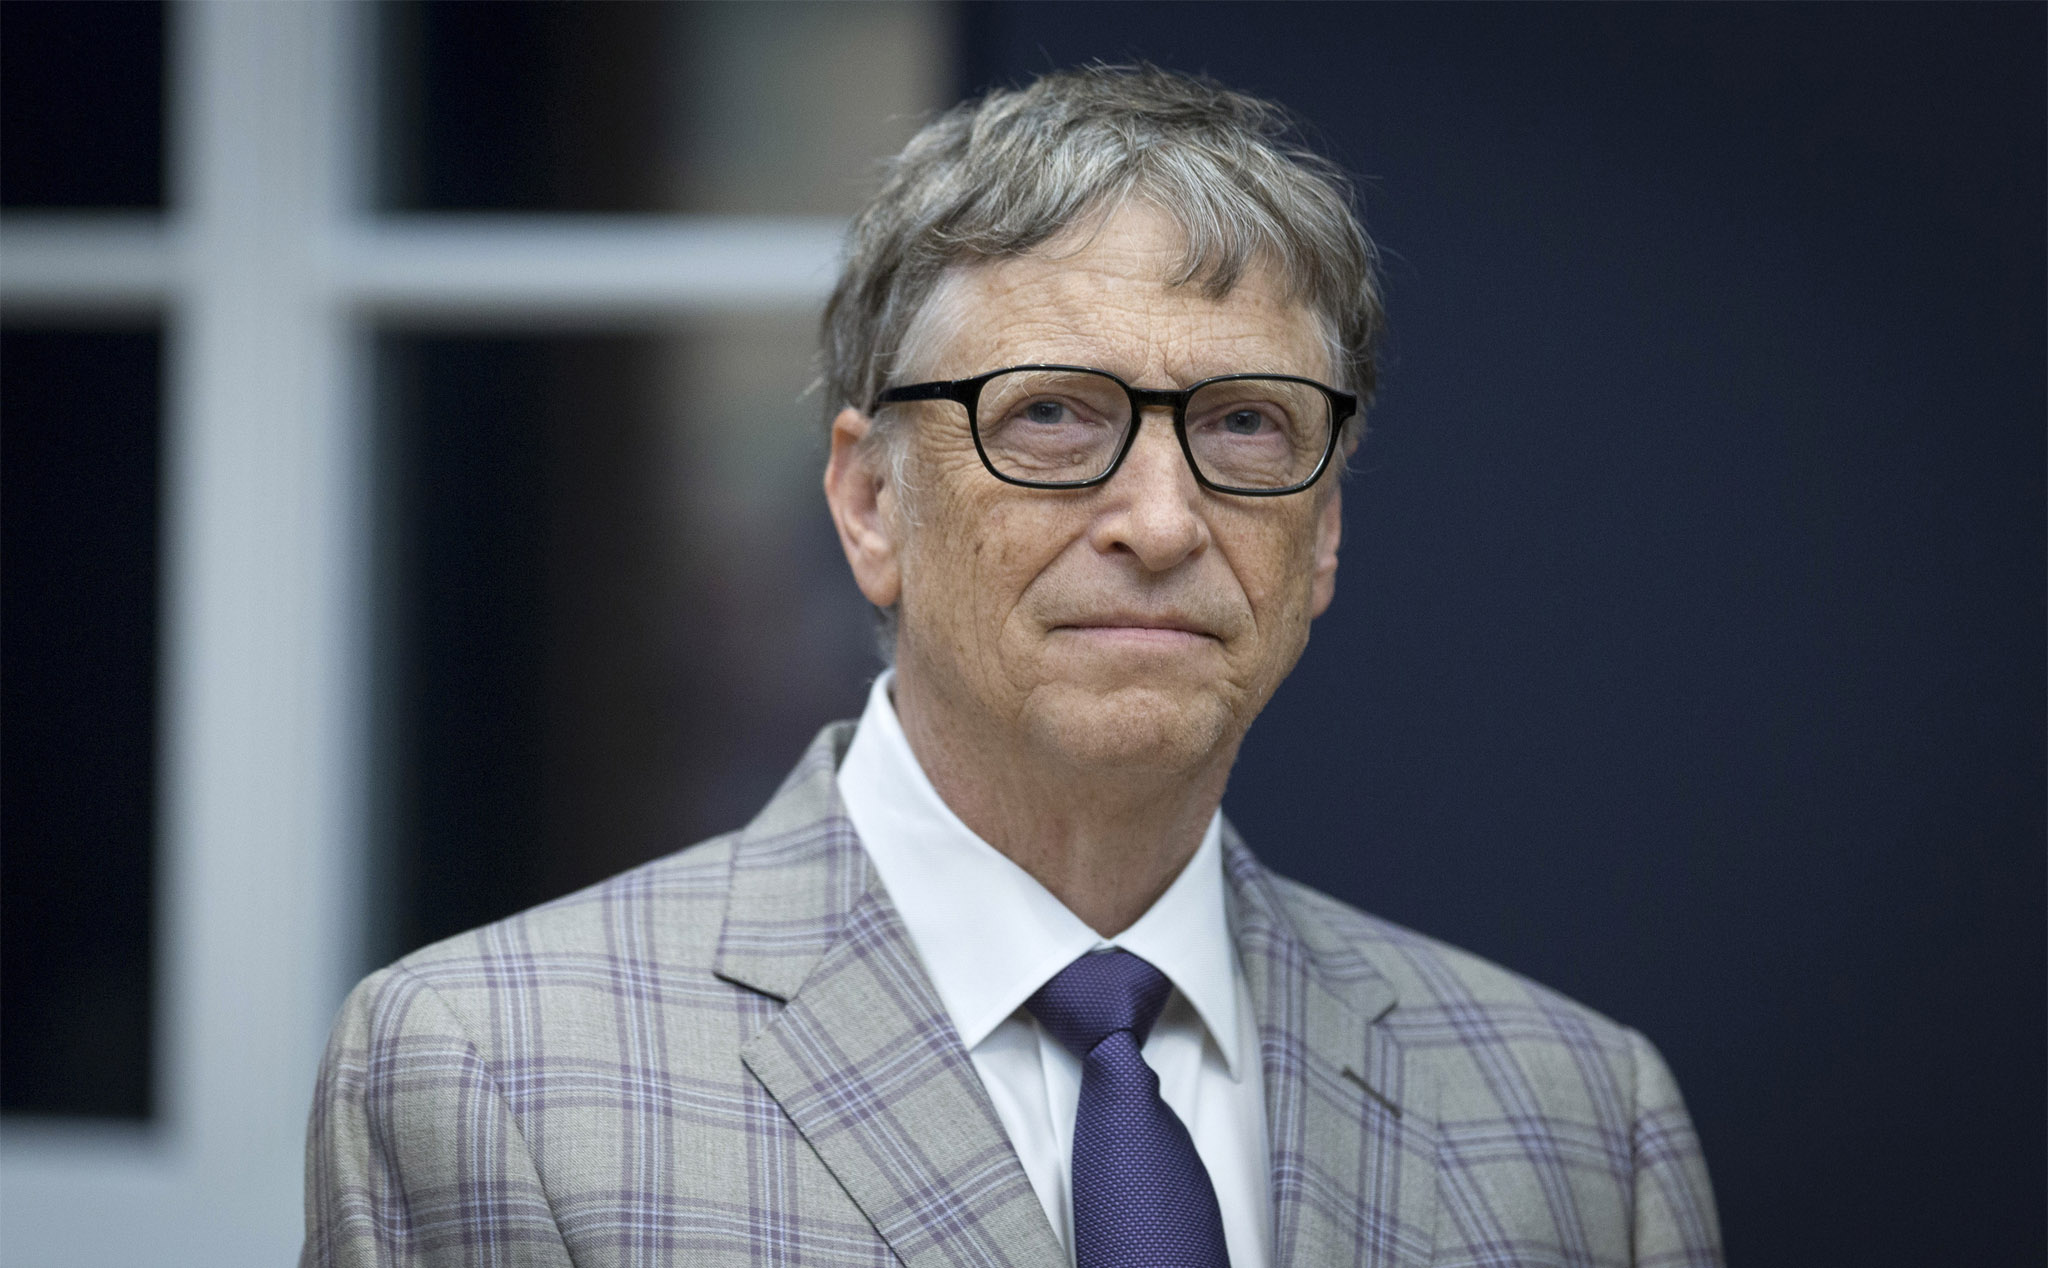 Nhìn lại những lời tiên đoán về thế giới của Bill Gates 20 năm về trước